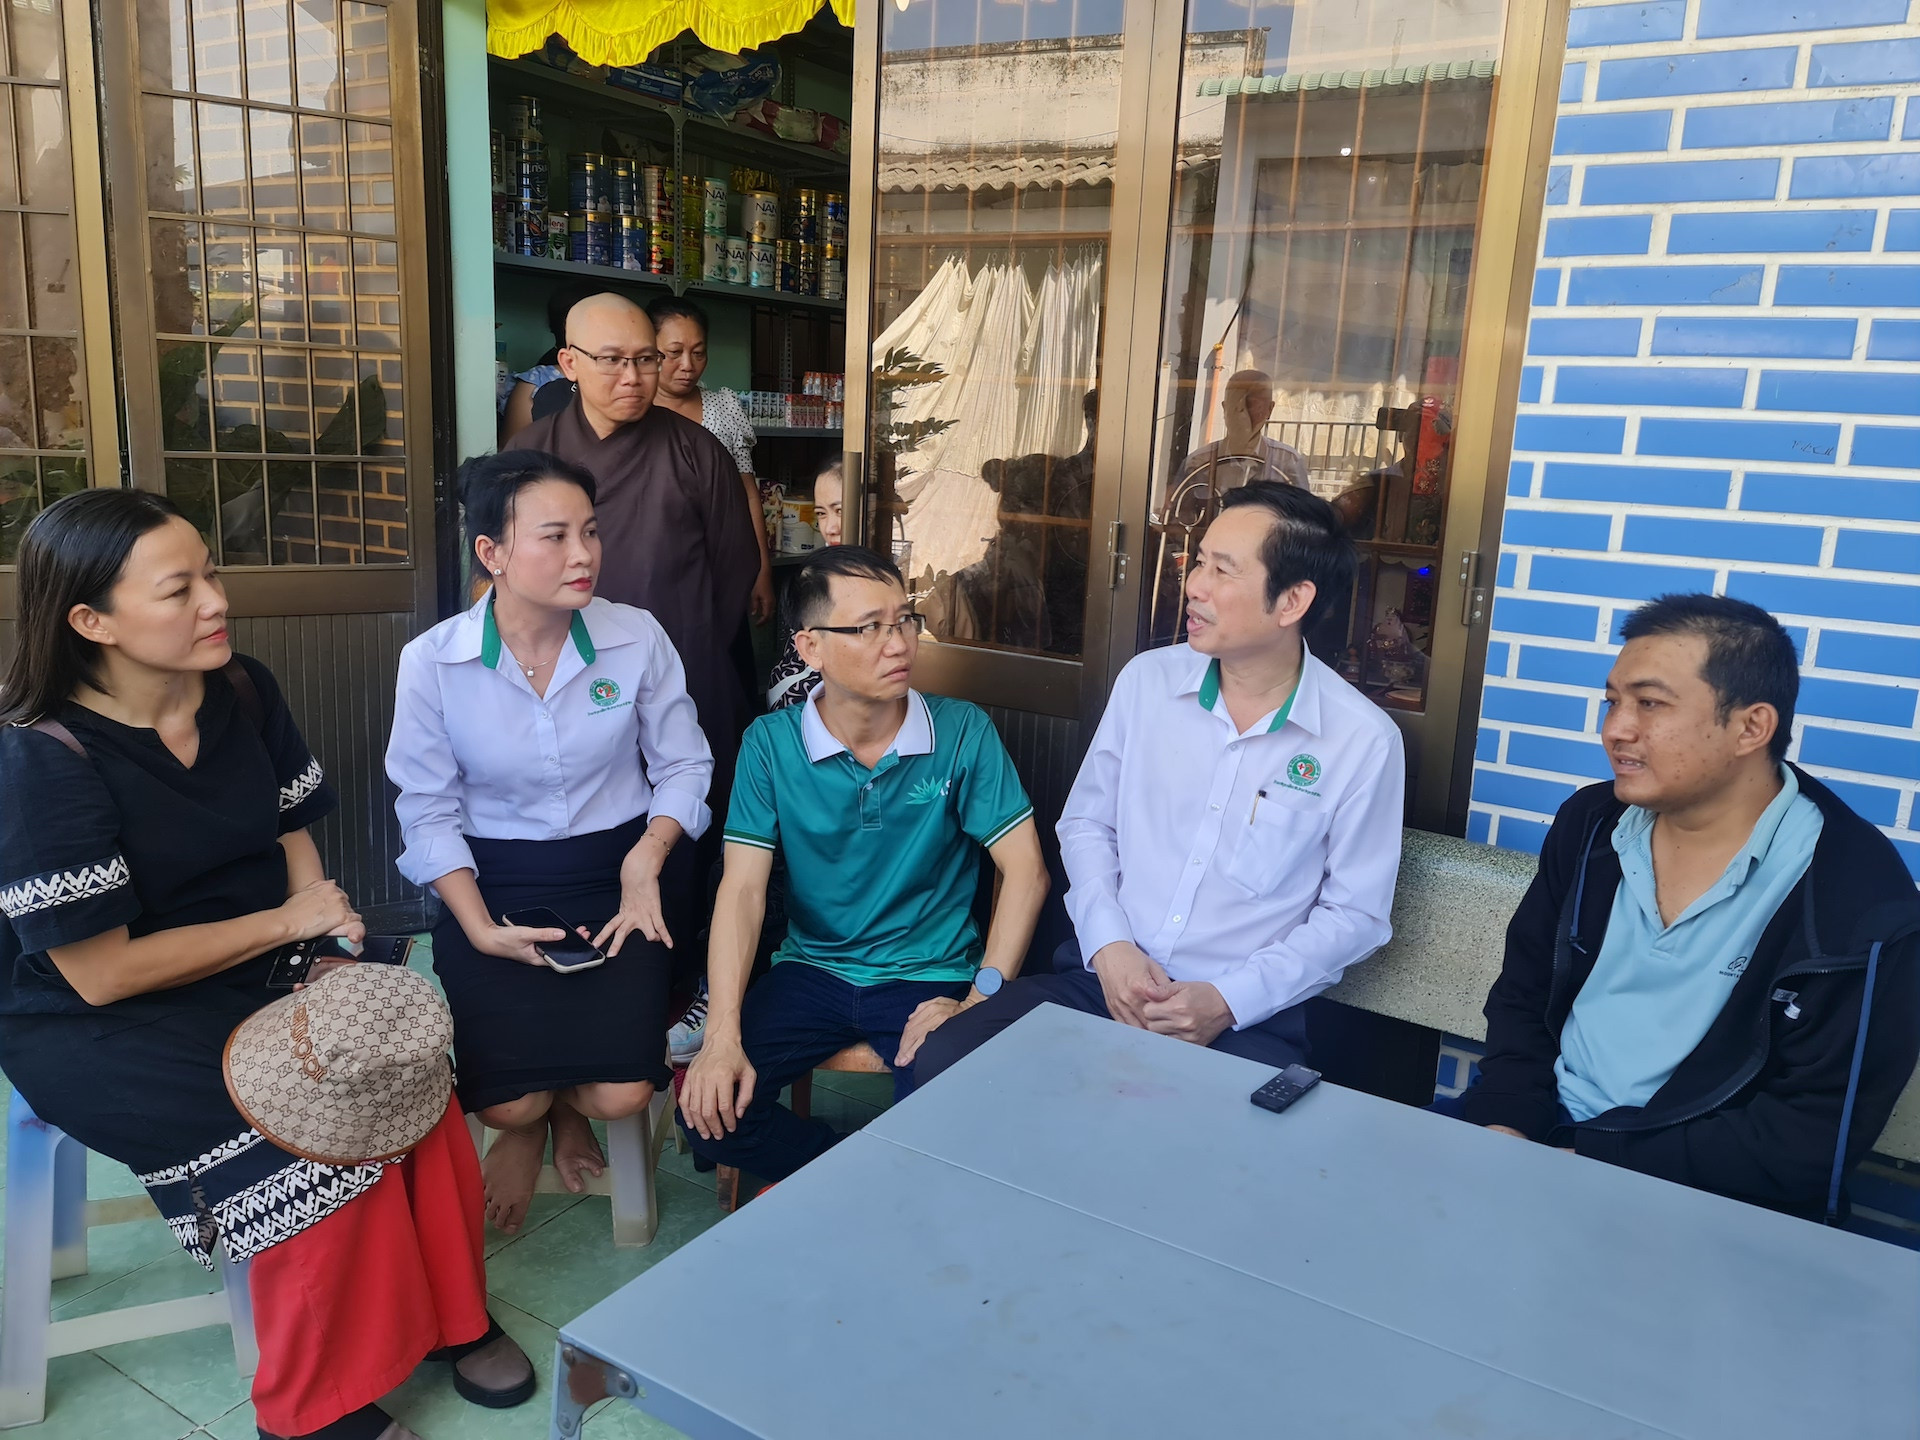 Bác sĩ Trần Văn Khanh, Giám đốc Bệnh viện Lê Văn Thịnh (thứ 2 từ phải qua) gặp gỡ trực tiếp gia đình người bệnh. Ông cho rằng sẽ cần khoảng 10 máy chạy thận để đáp ứng cho người bệnh suy thận mạn giai đoạn cuối hiện tại ở Cần Giờ (41 người).